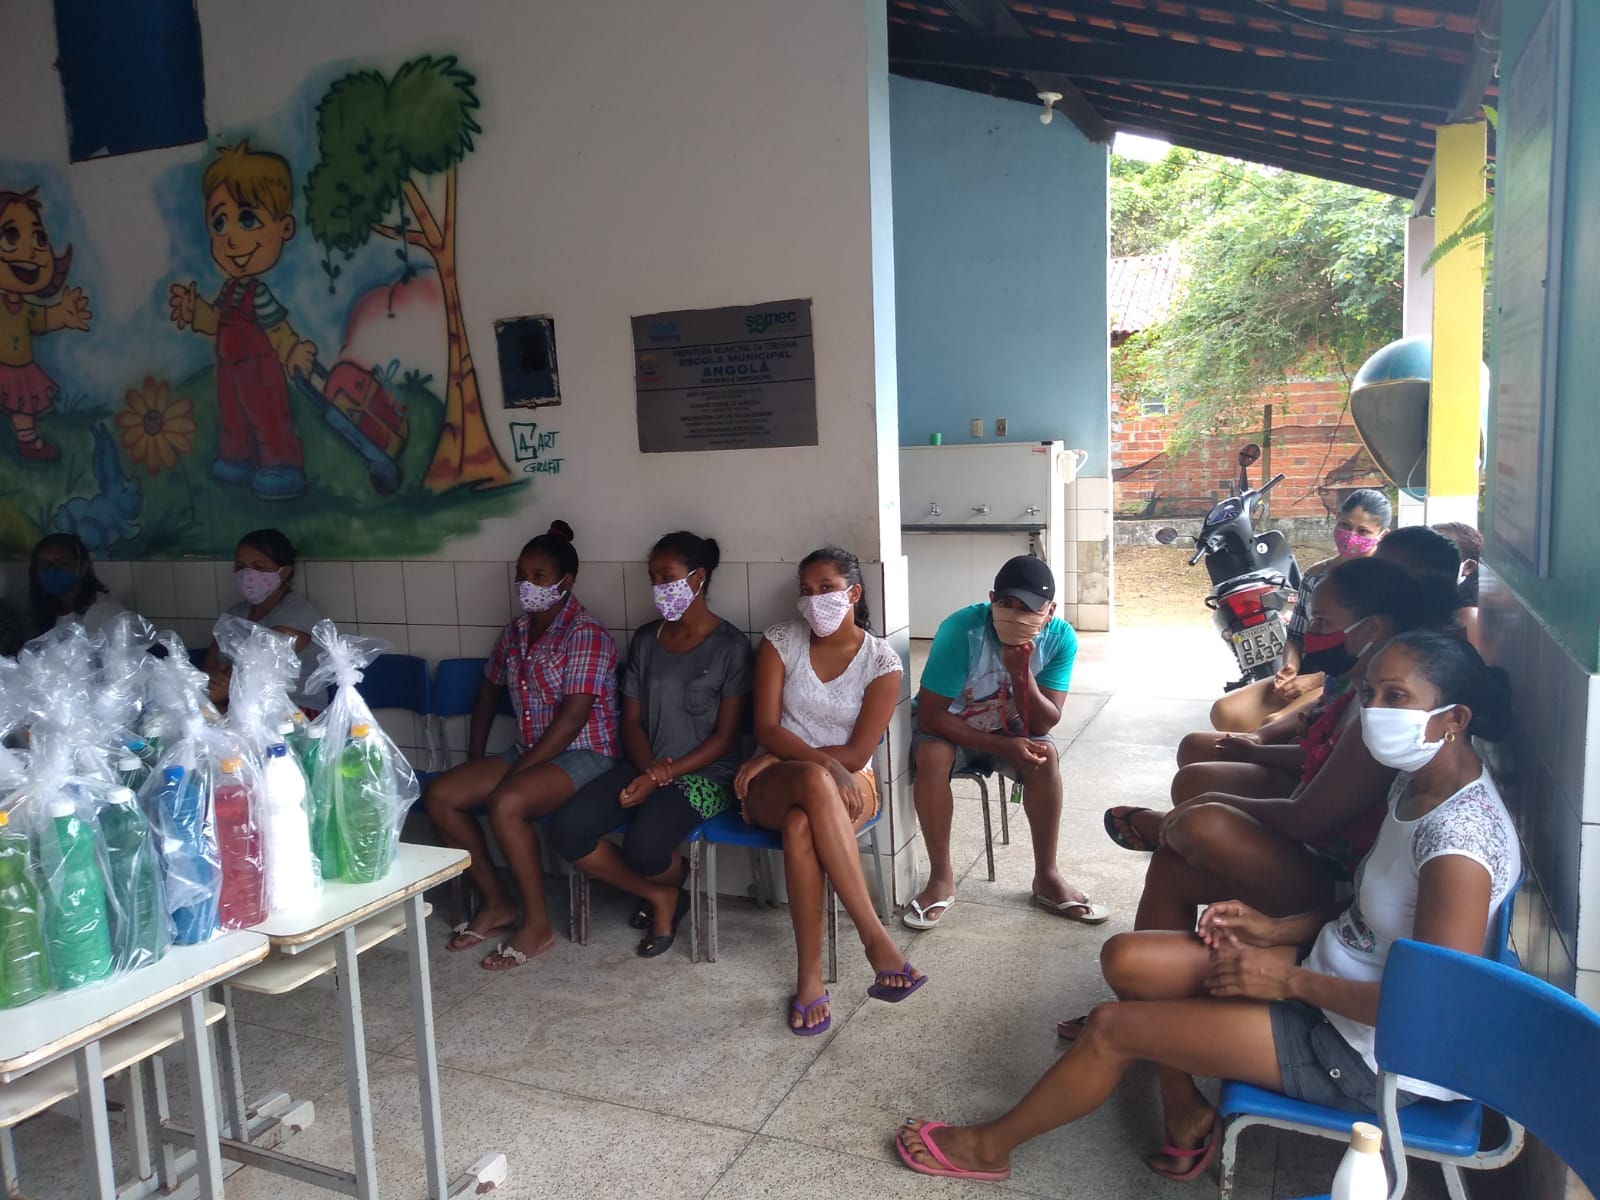 Mais de 40 mulheres beneficiadas com cestas básicas em ação social na zona rural de Teresina